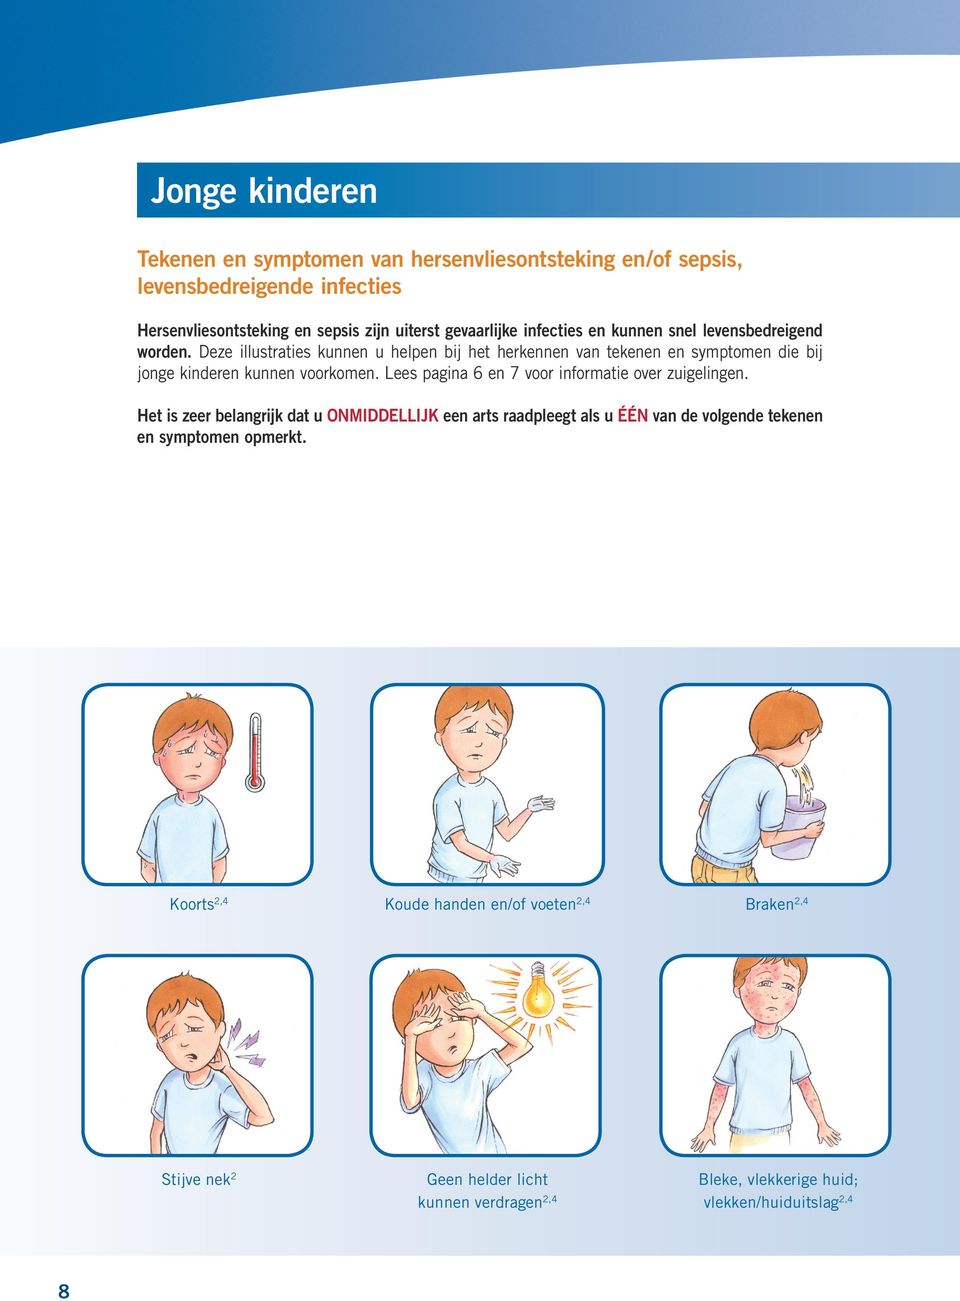 Deze illustraties kunnen u helpen bij het herkennen van tekenen en symptomen die bij jonge kinderen kunnen voorkomen.